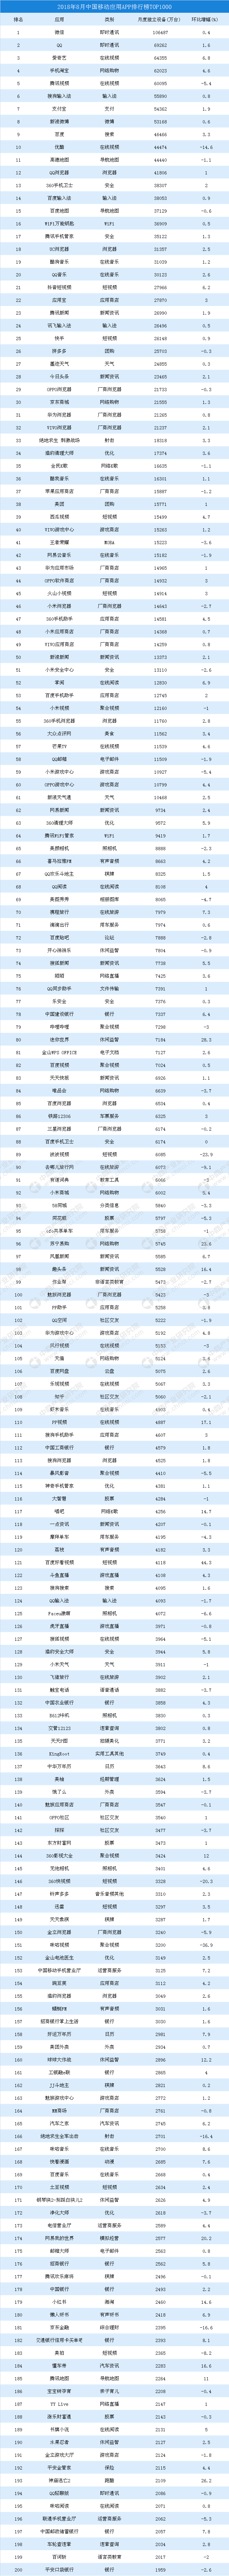 2018年8月中国移动应用APP排行榜TOP1000